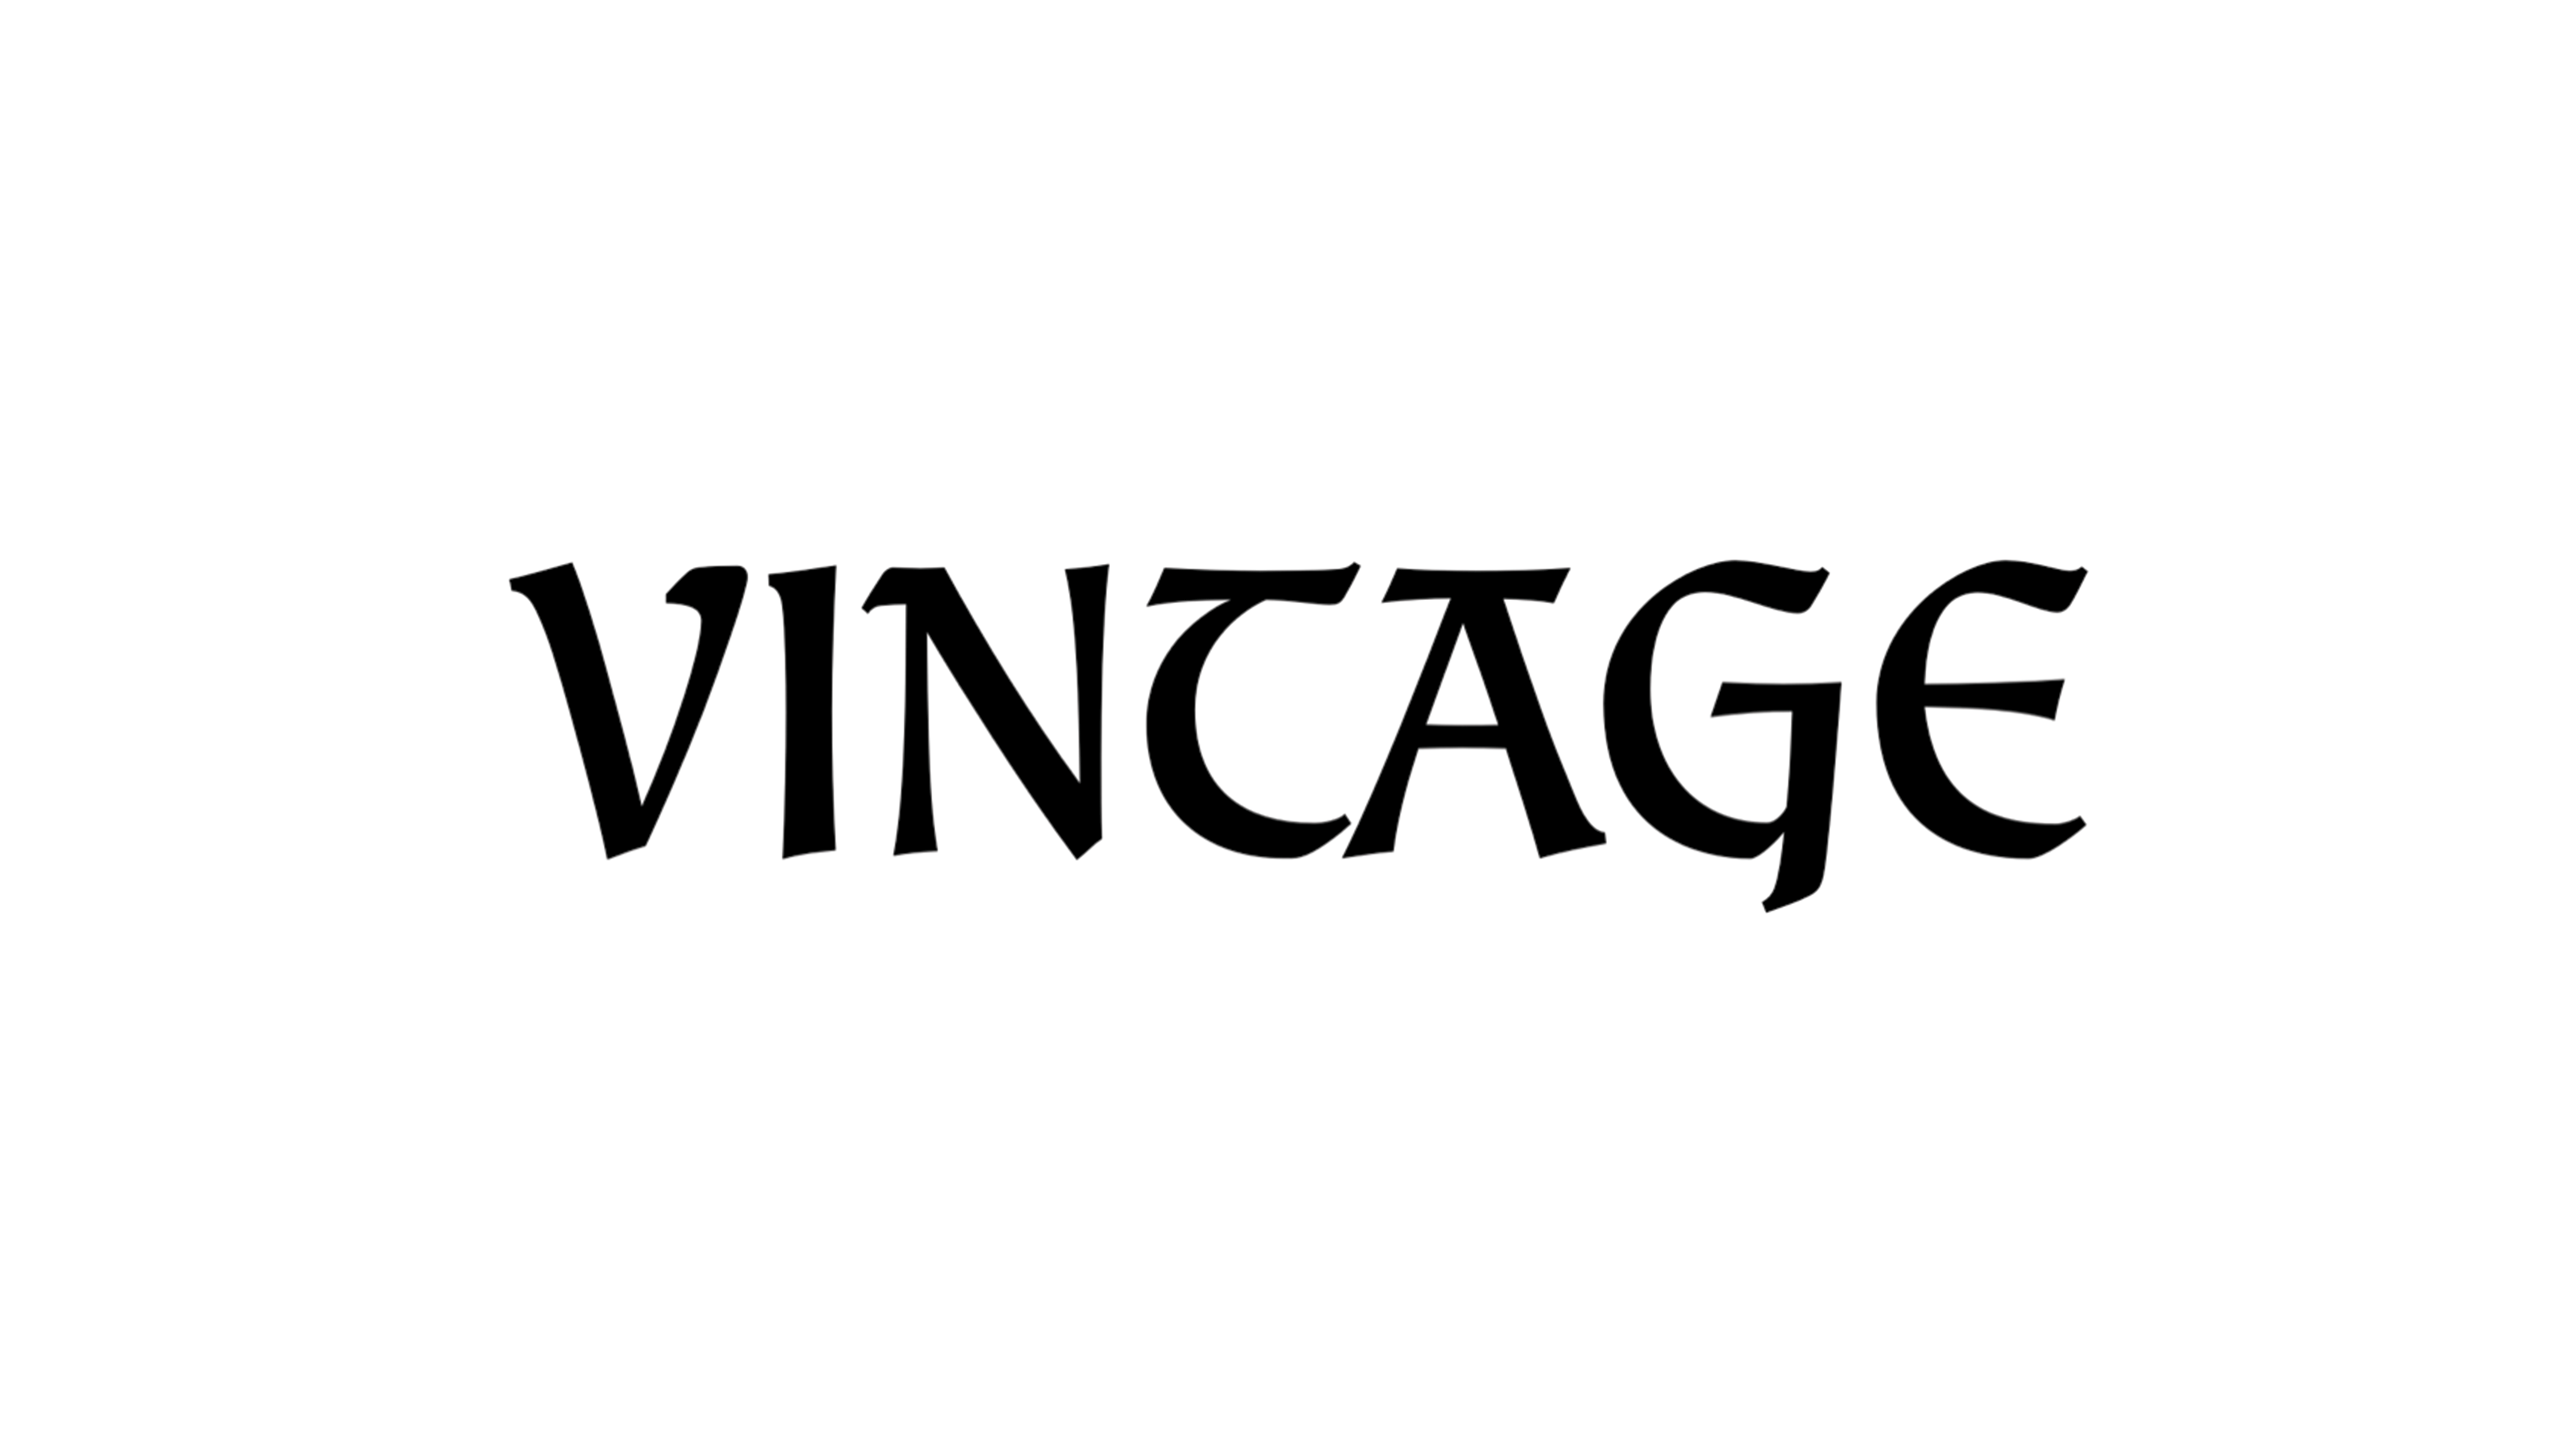 VINTAGE_vintage & MODERN_modern